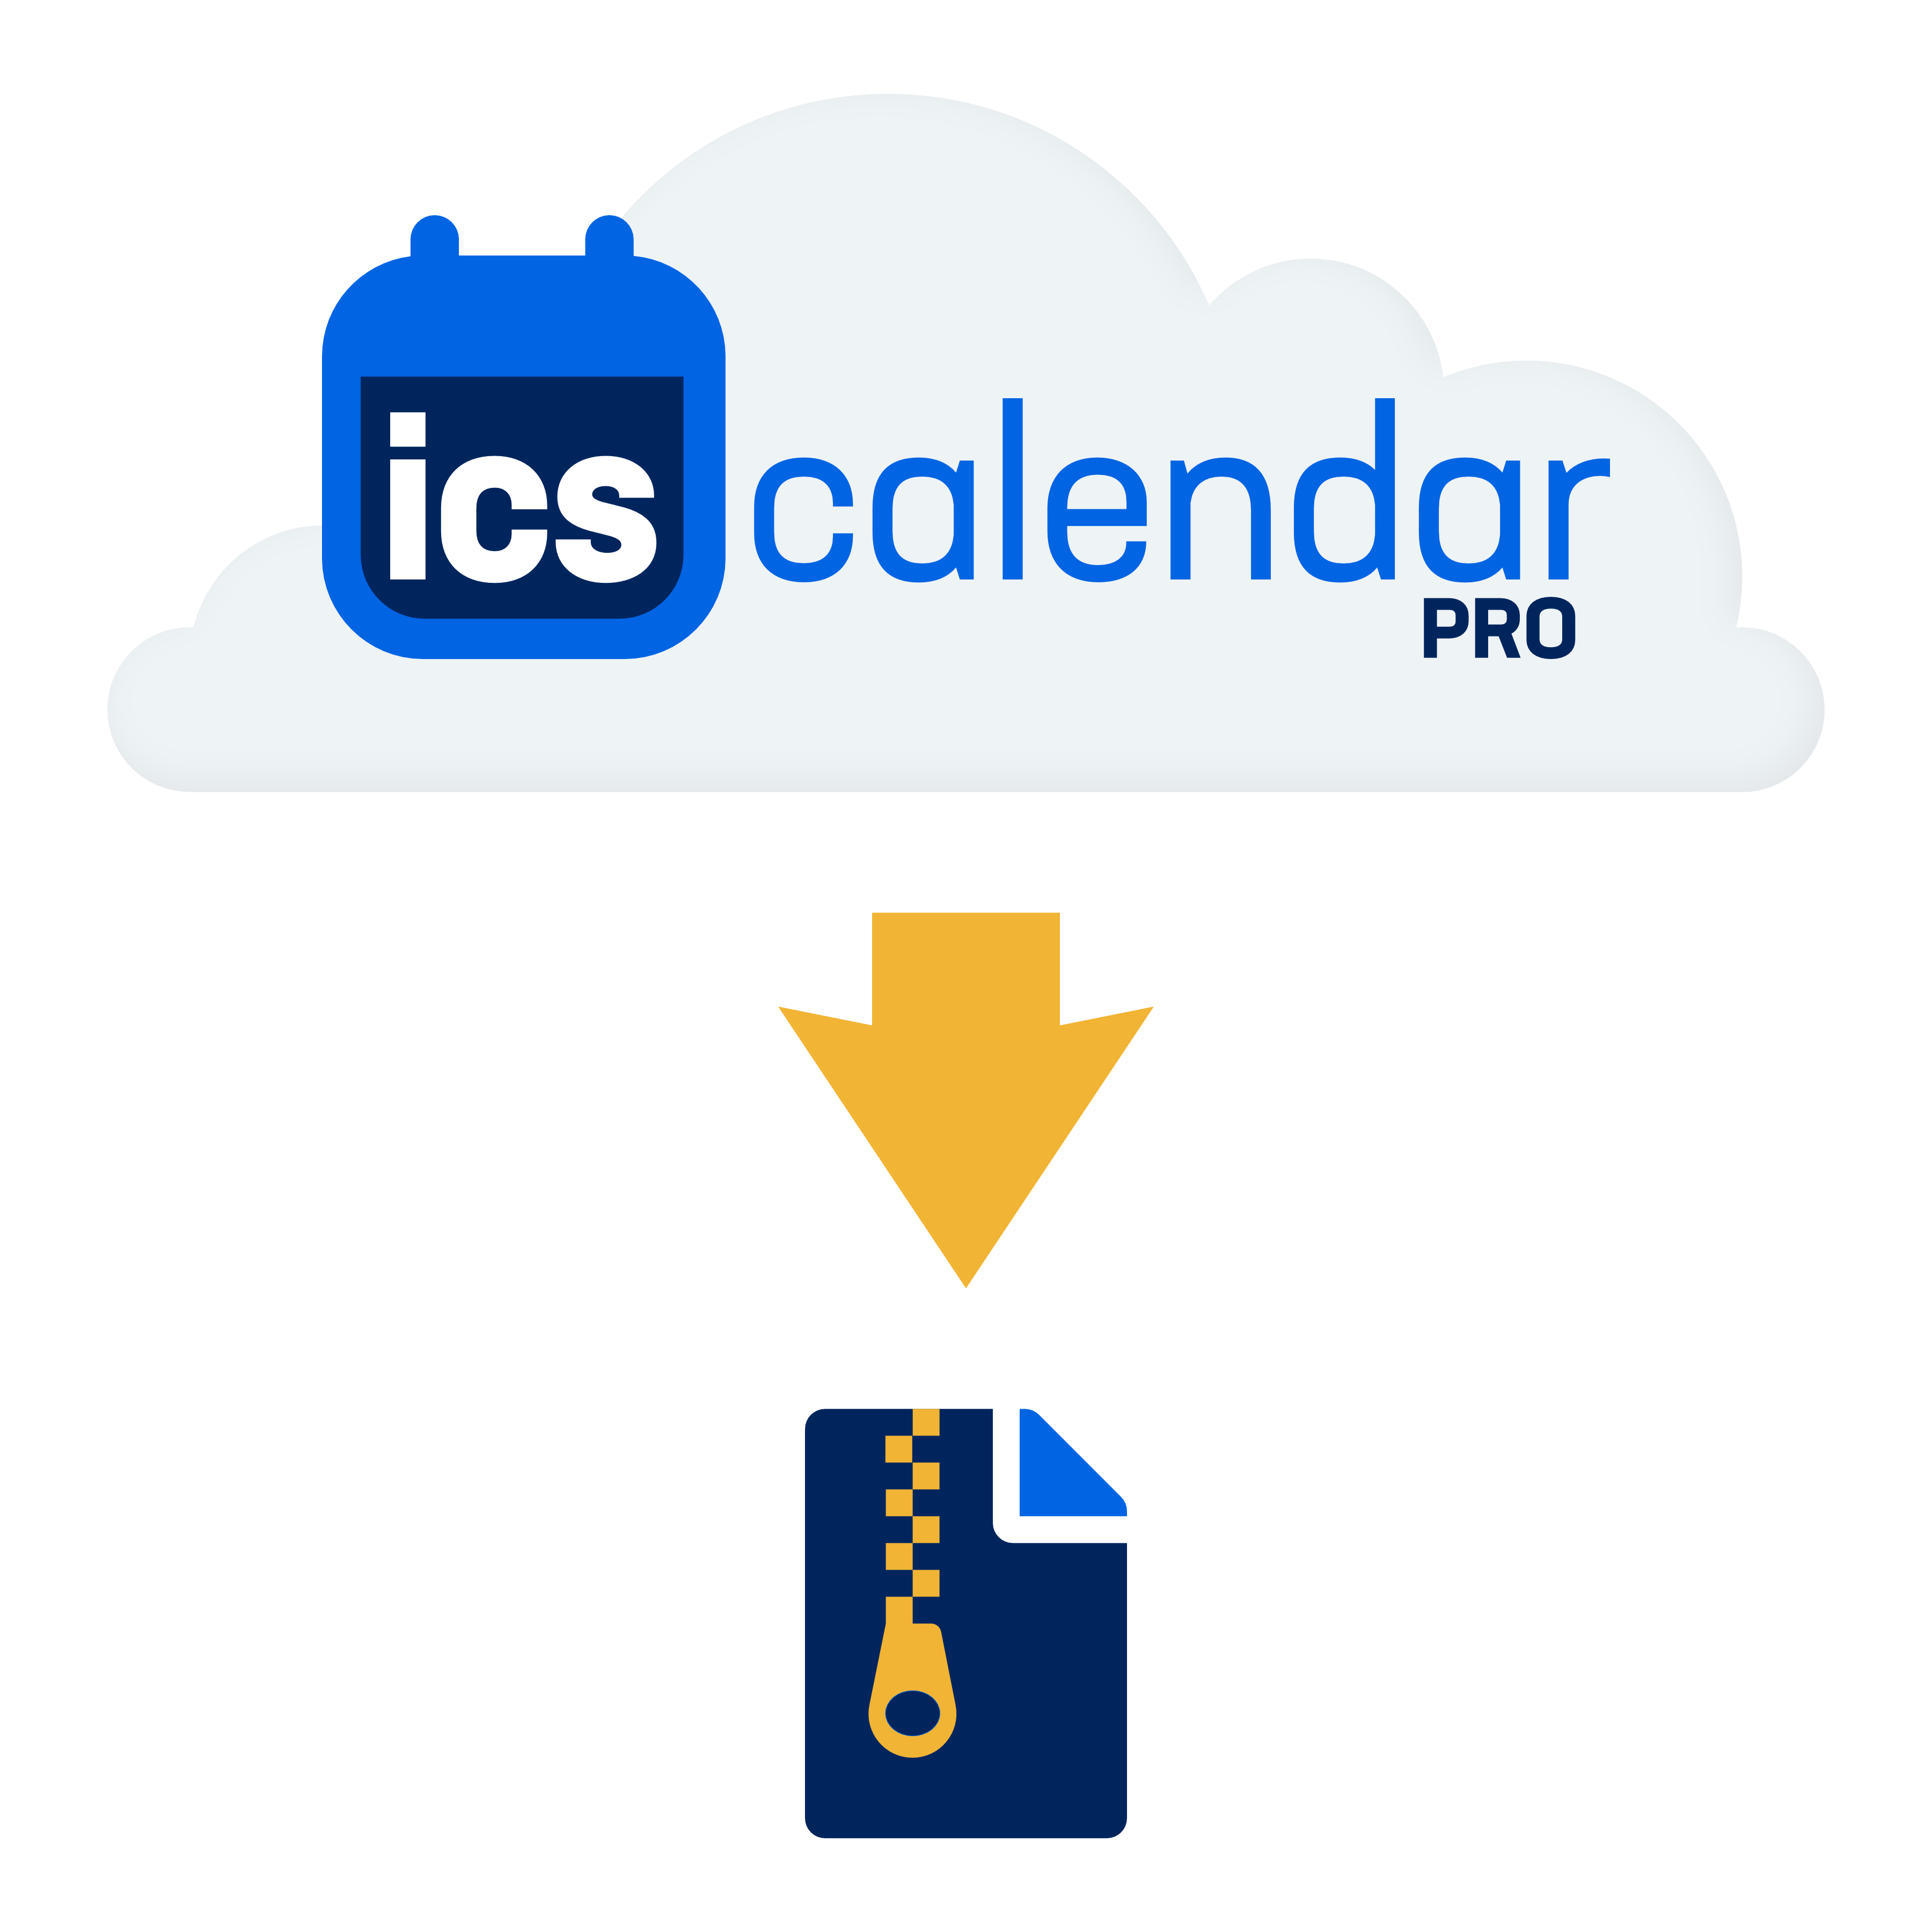 ICS Calendar Pro ICS Calendar